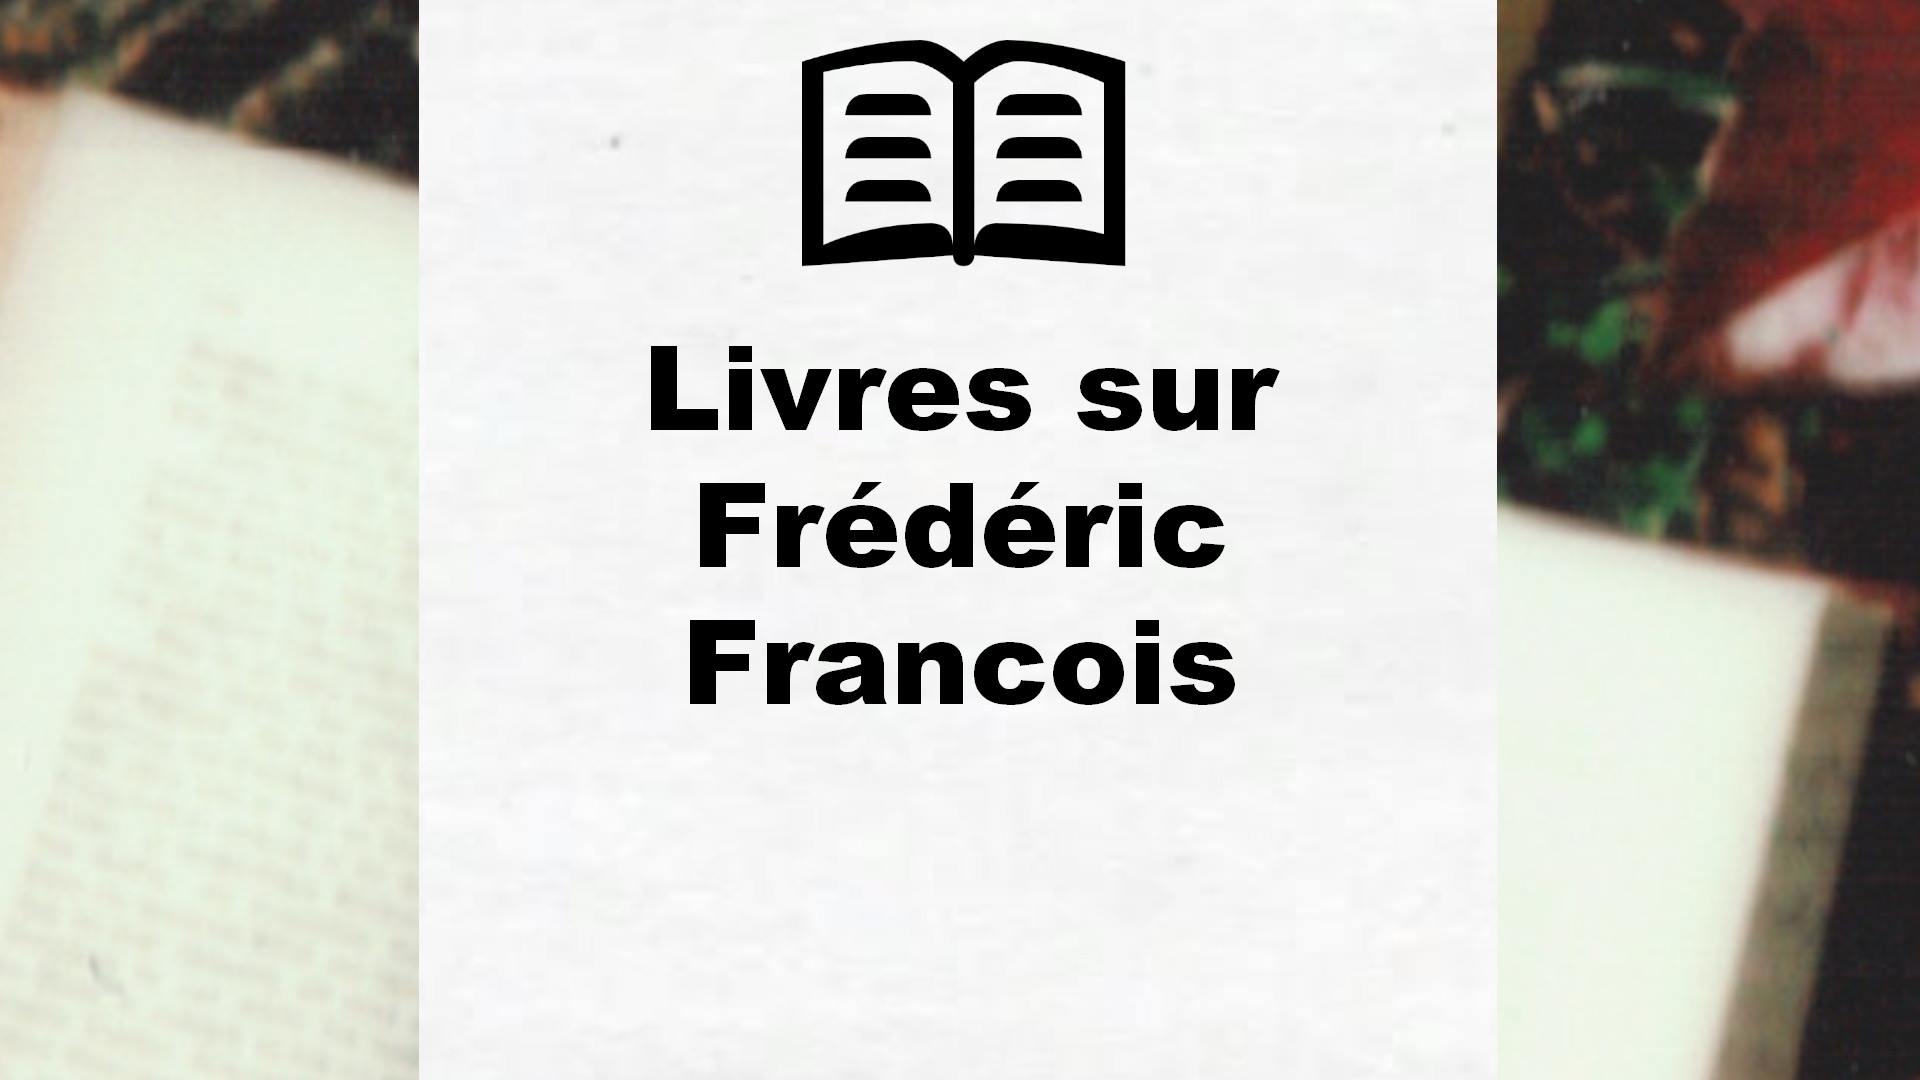 Livres sur Frédéric Francois